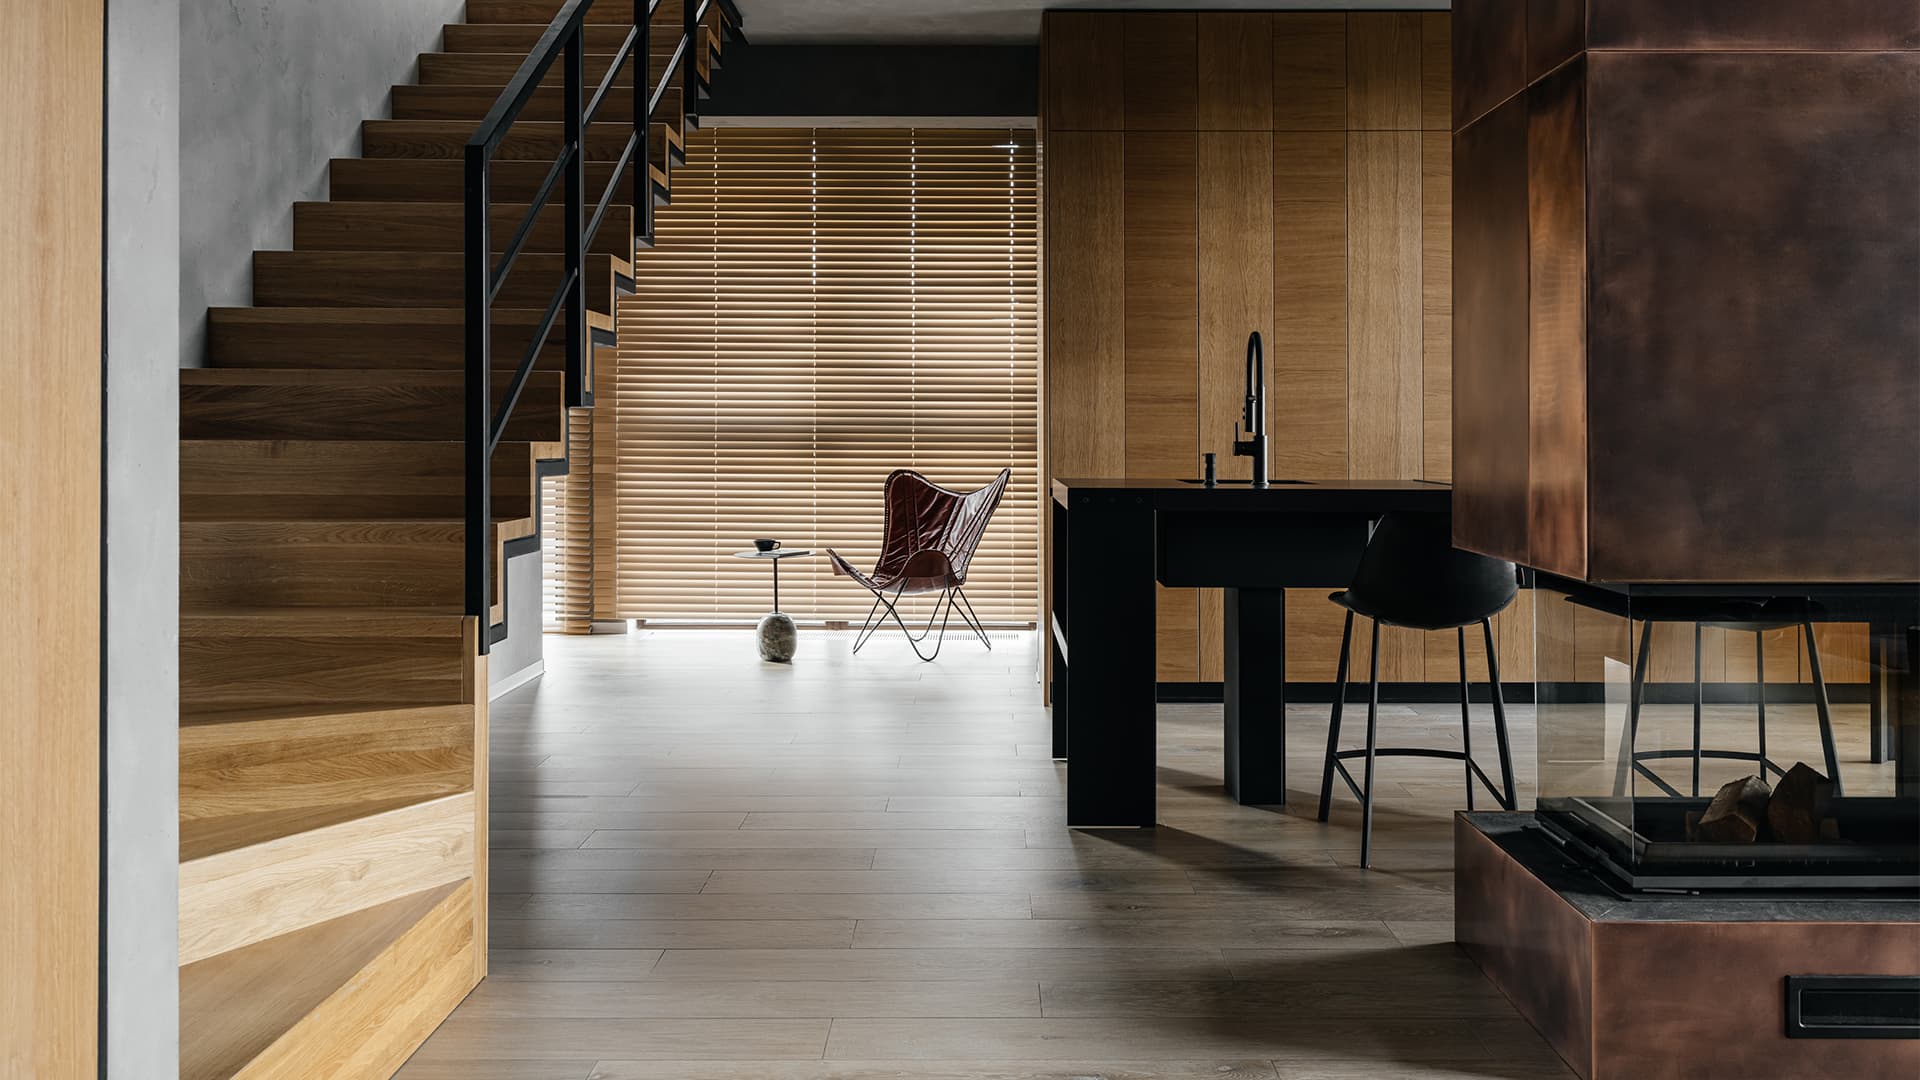 Пять лестниц и элементы стиля лофт в интерьере многоэтажной квартиры для большой семьи — проект Алексея Аладашвили